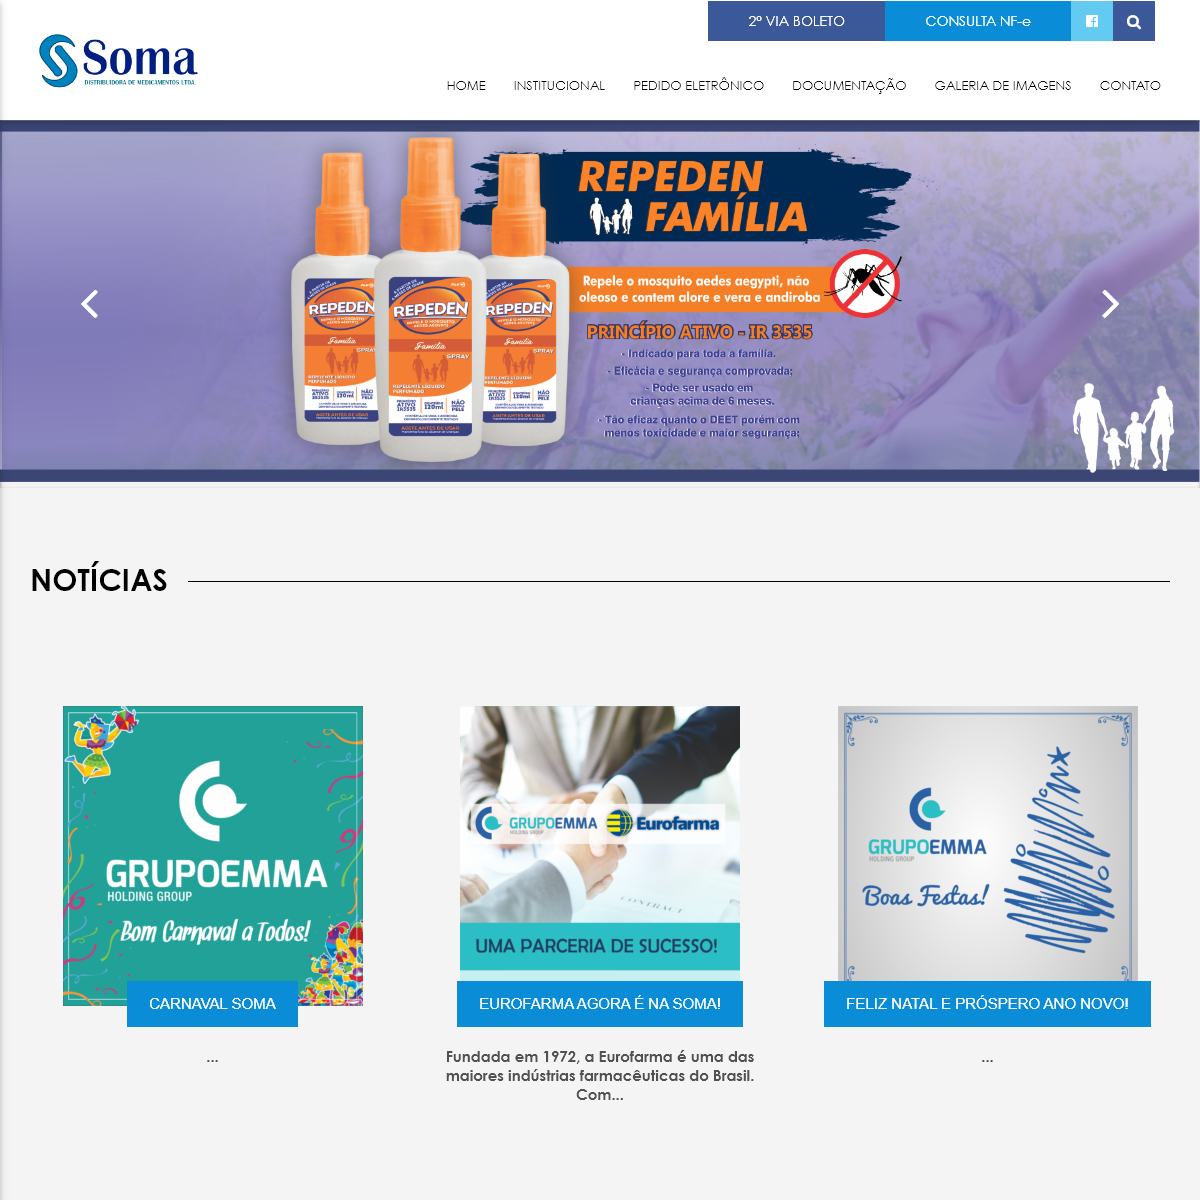 A complete backup of somaltda.com.br